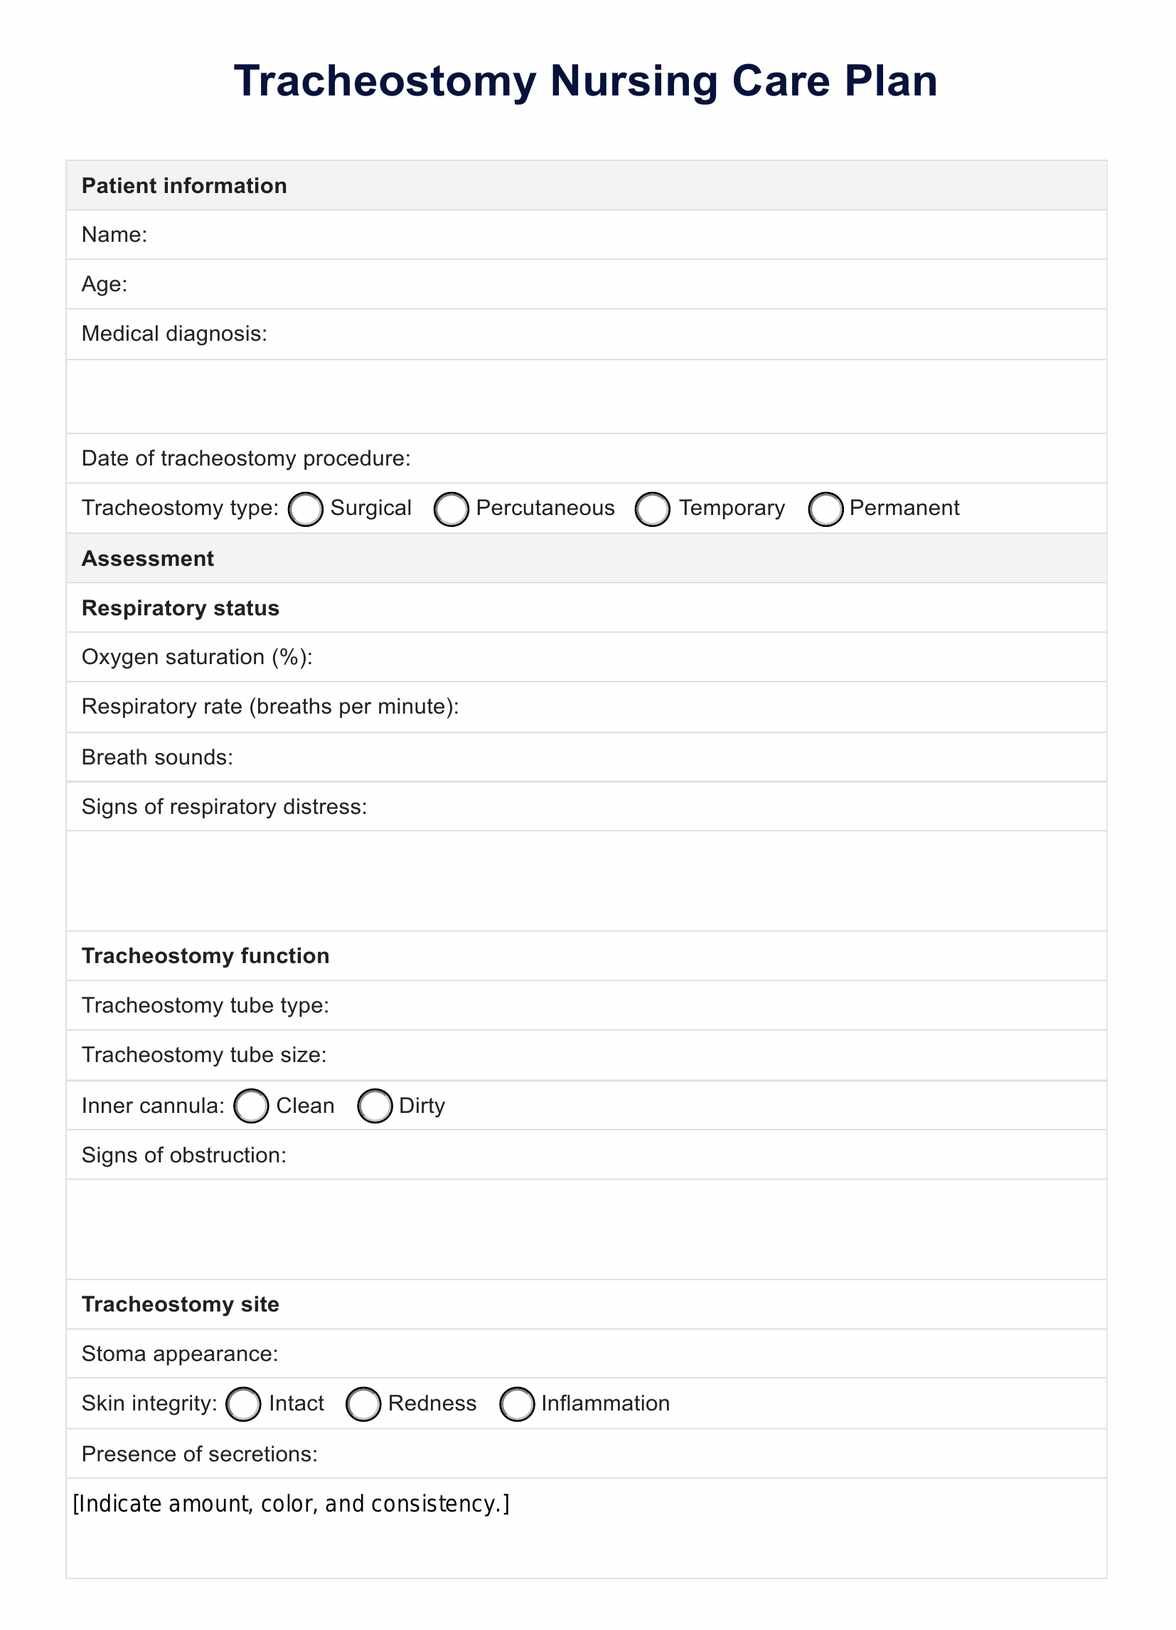 Tracheostomy Nursing Care Plan PDF Example